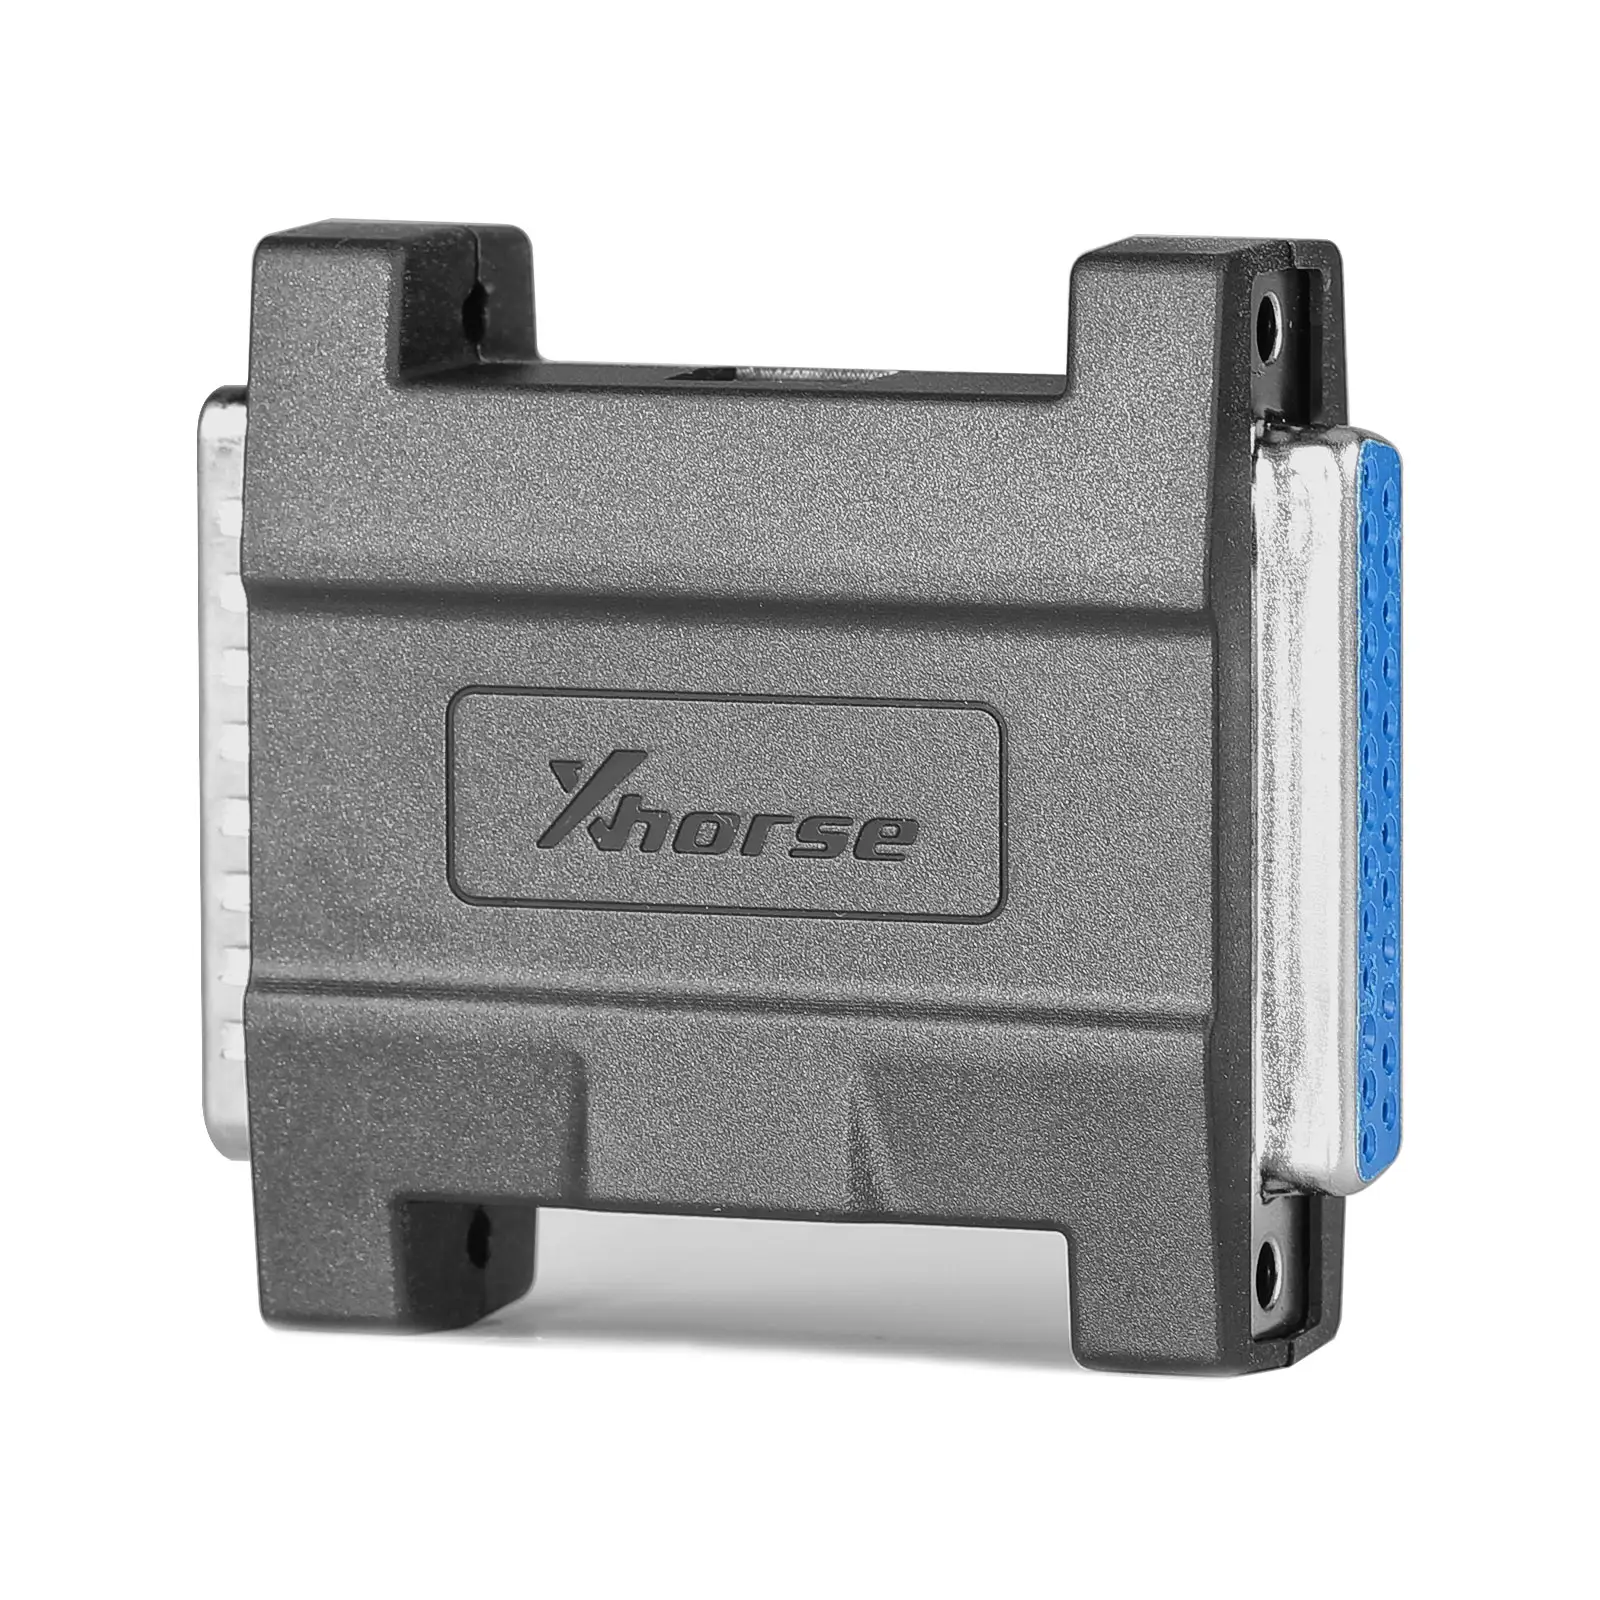 2022 Новинка Xhorse XDBASK для Toyota 8A смарт-ключ адаптер для всех ключей для утери с VVDI Key Tool Plus